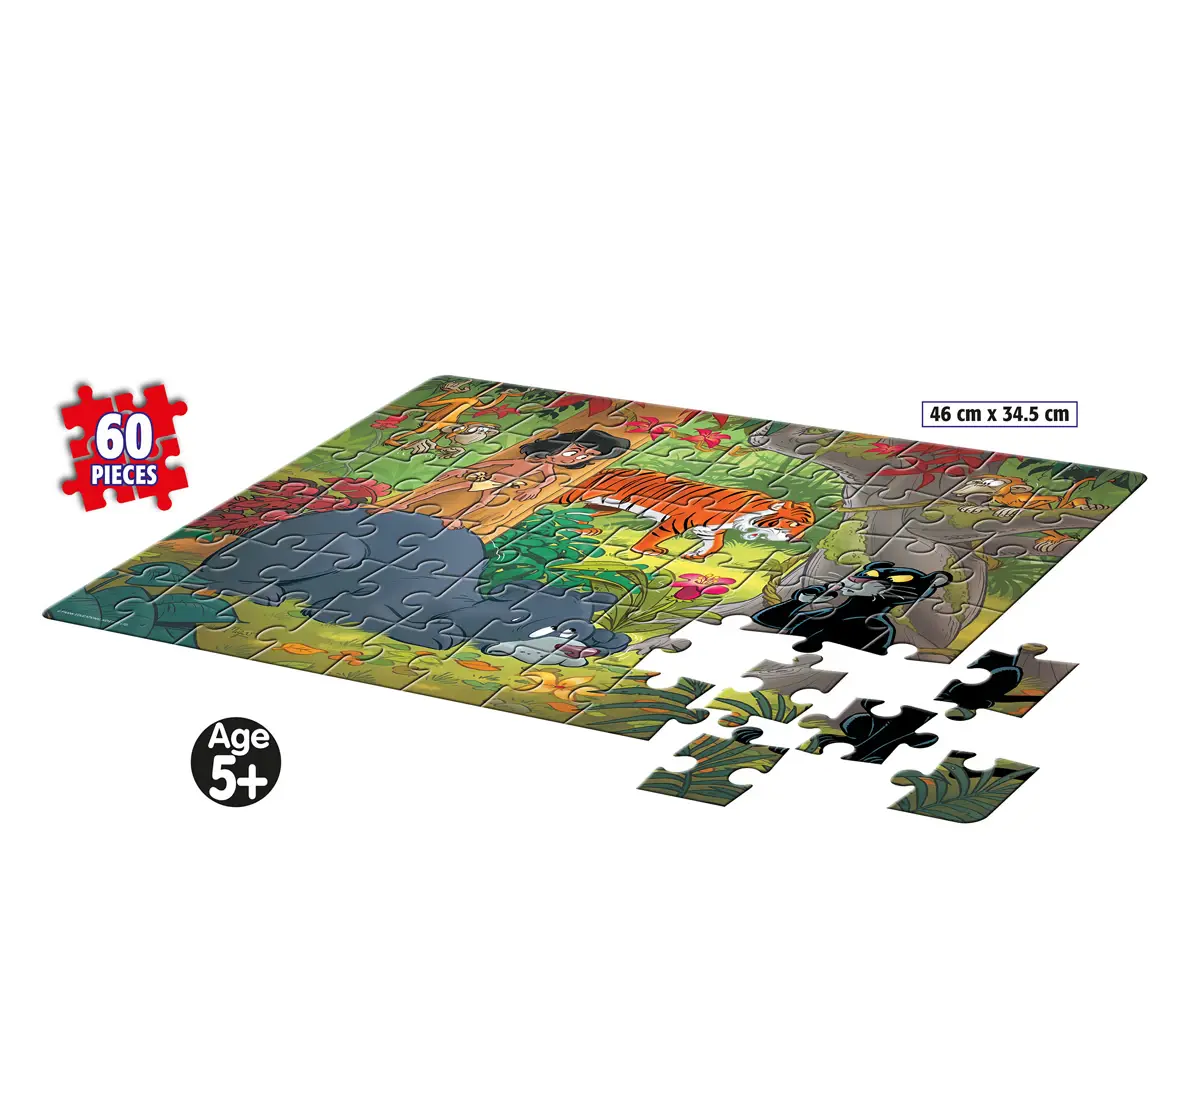 Frank The Jungle Book Floor Puzzles Multicolor 5Y+